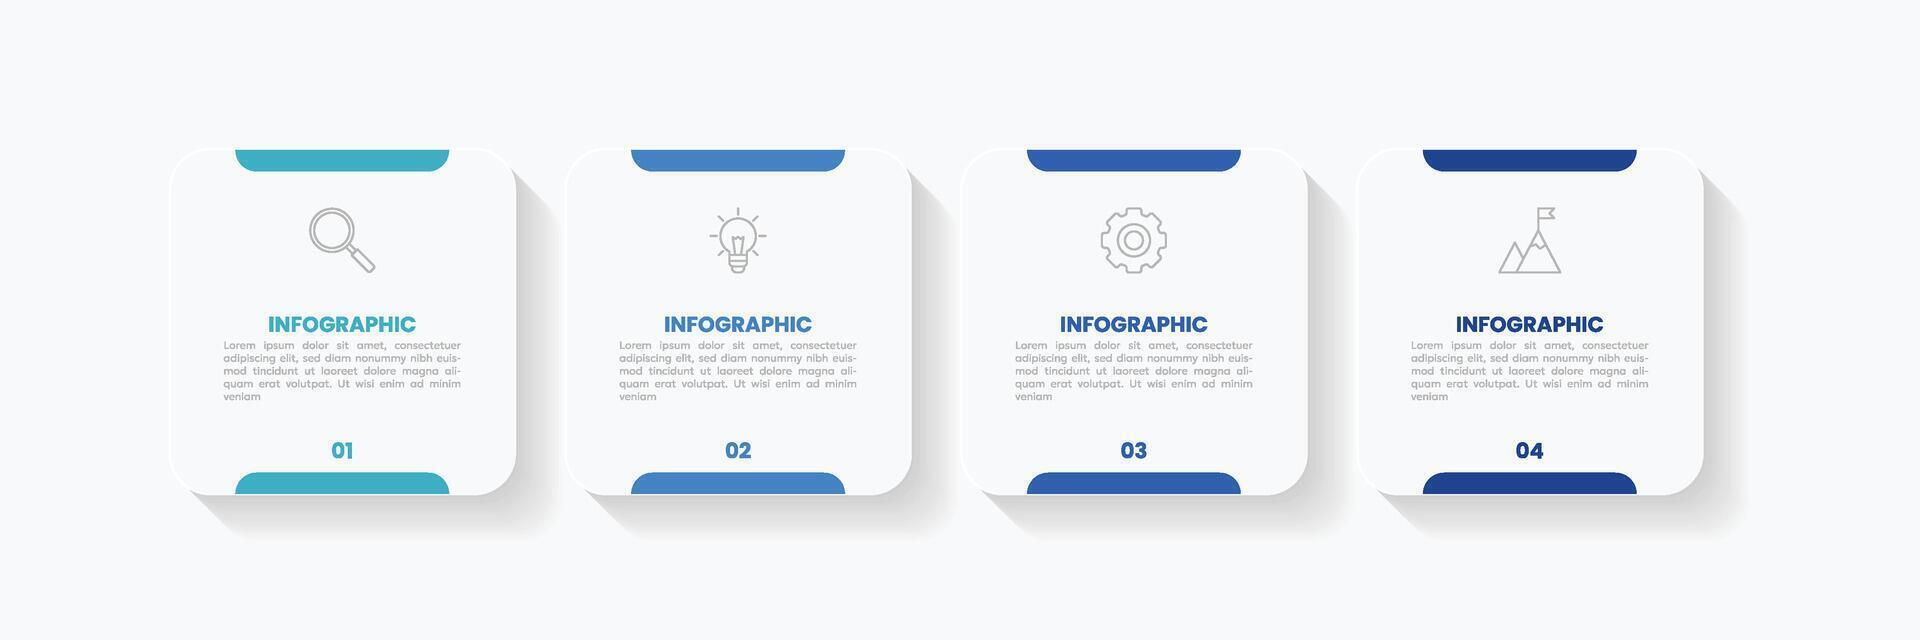 infografía etiqueta diseño modelo con íconos y 4 4 opciones o pasos. vector